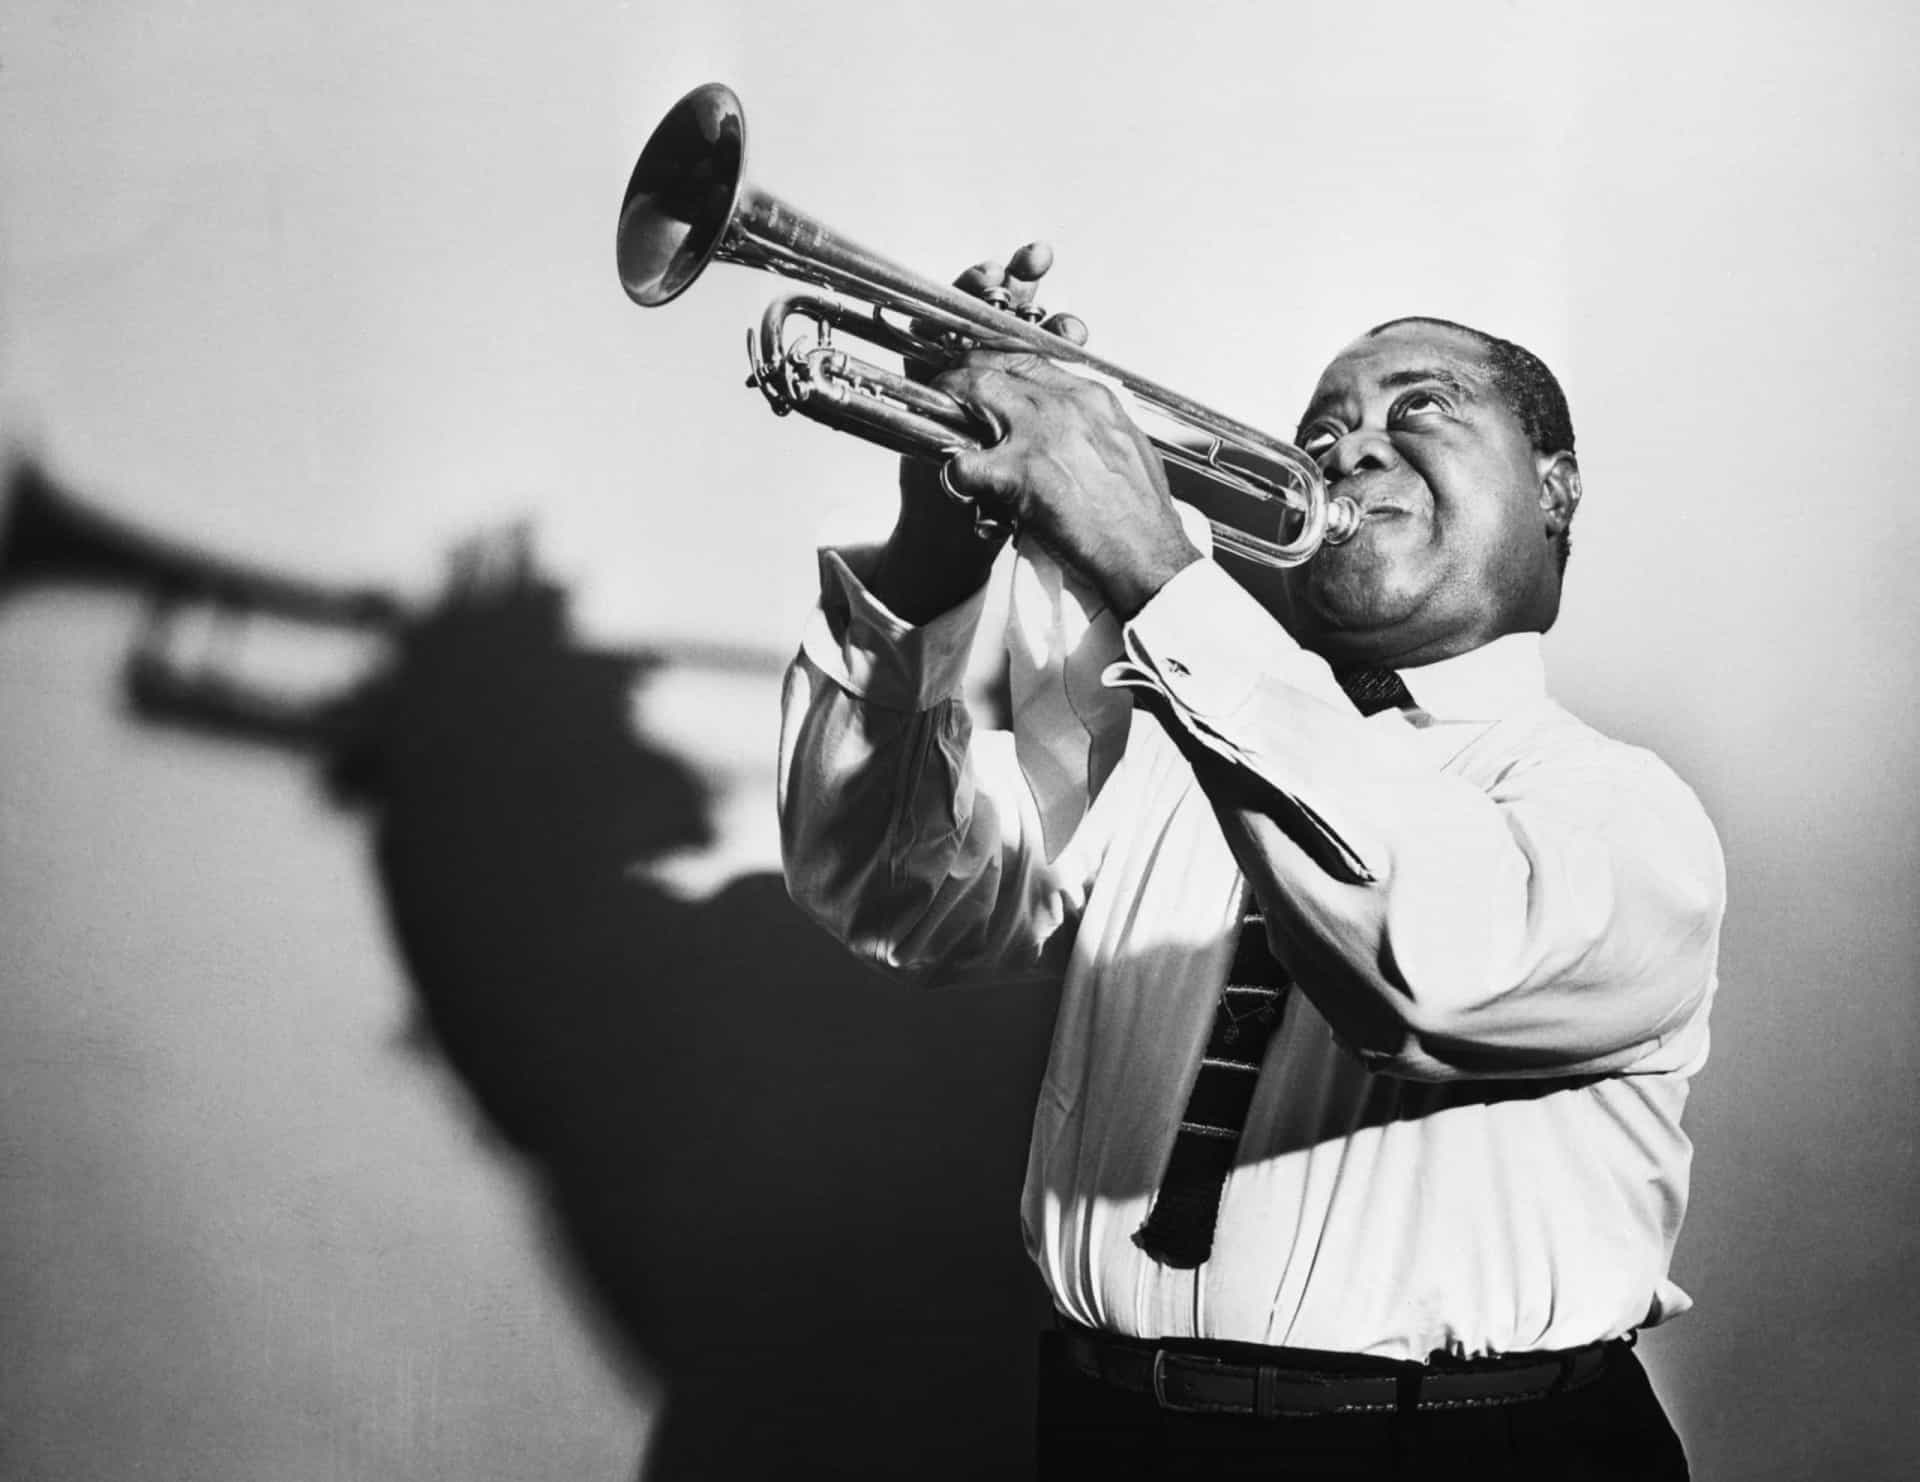 <p>De jazzlegende blies net niet zijn laatste adem uit op zijn trompet. Hij werd in 1971, aan het einde van een twee weken durende concertreeks, getroffen door een hartaanval. Hij overleed uiteindelijk in het ziekenhuis aan de gevolgen van hartfalen. Hij was toen 69. </p>